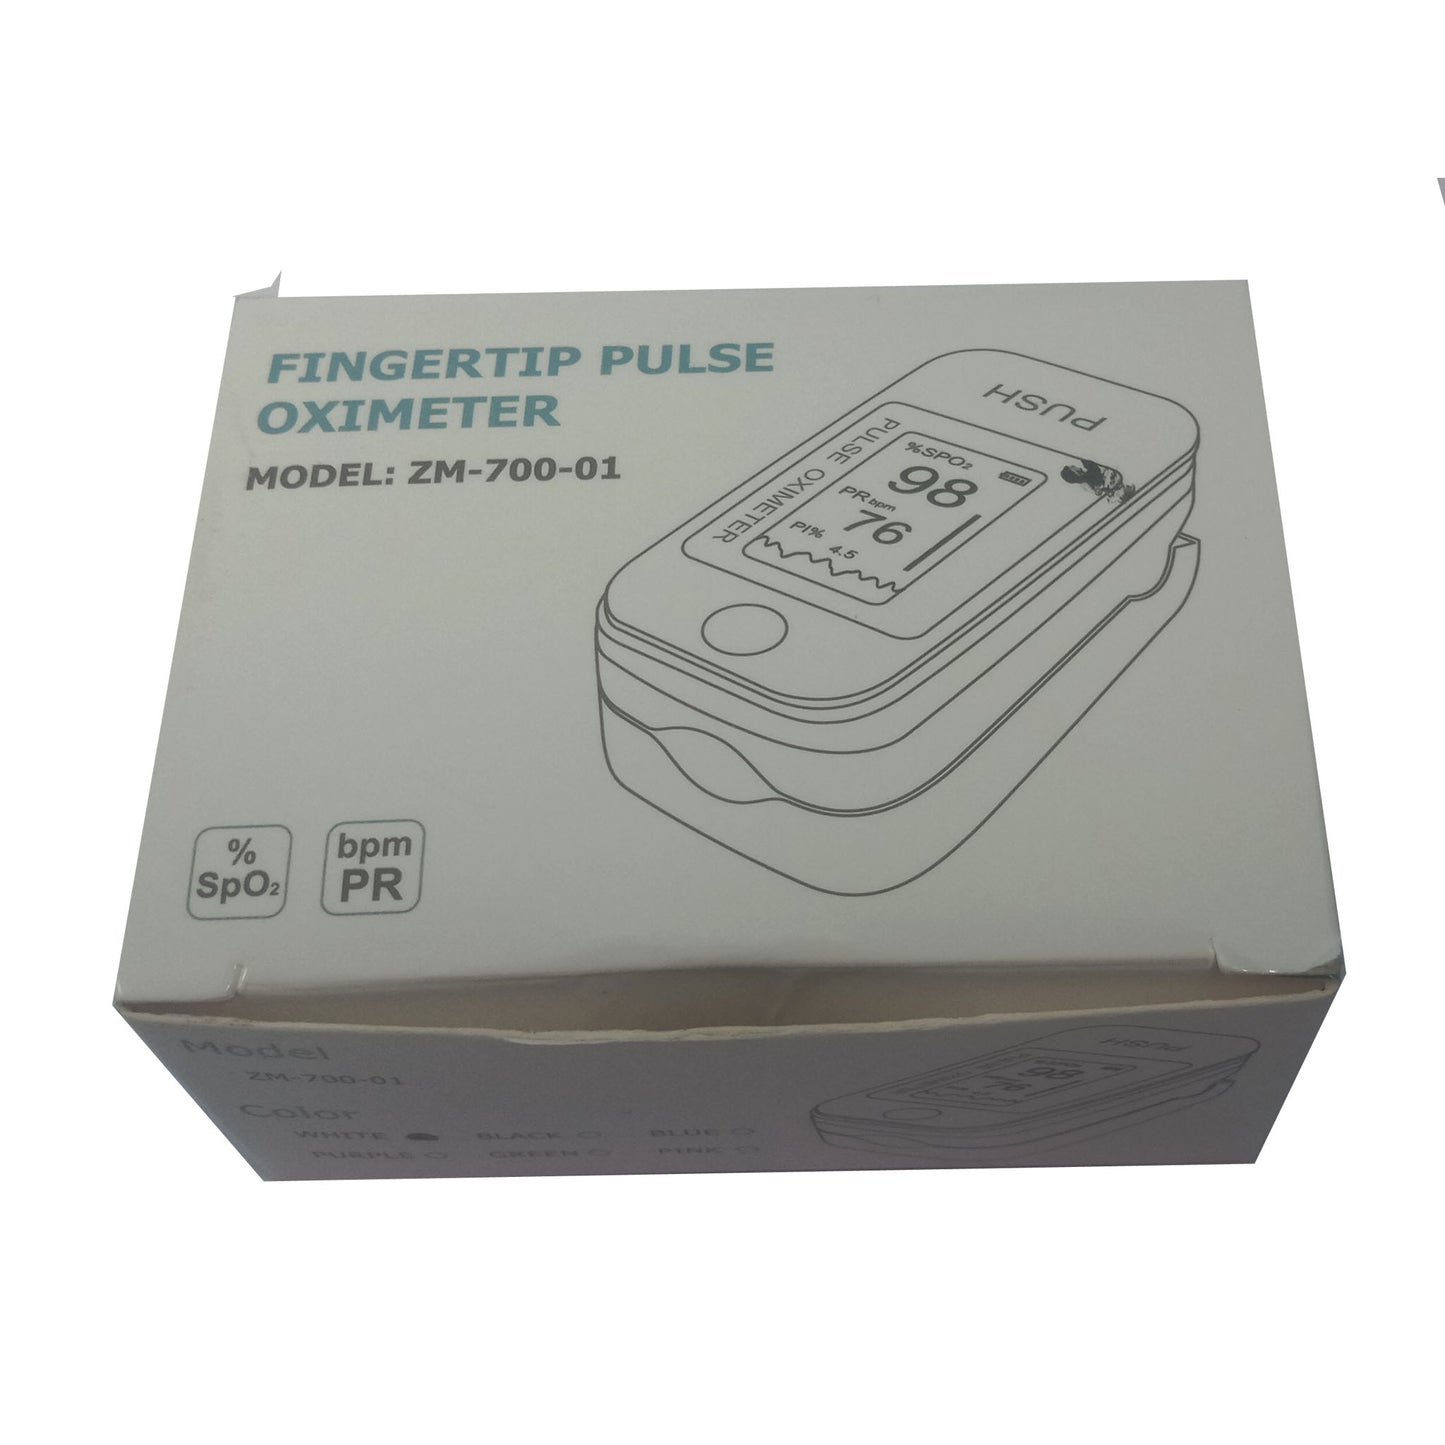 Fingertip pulse Oximeter model Zm-700-01